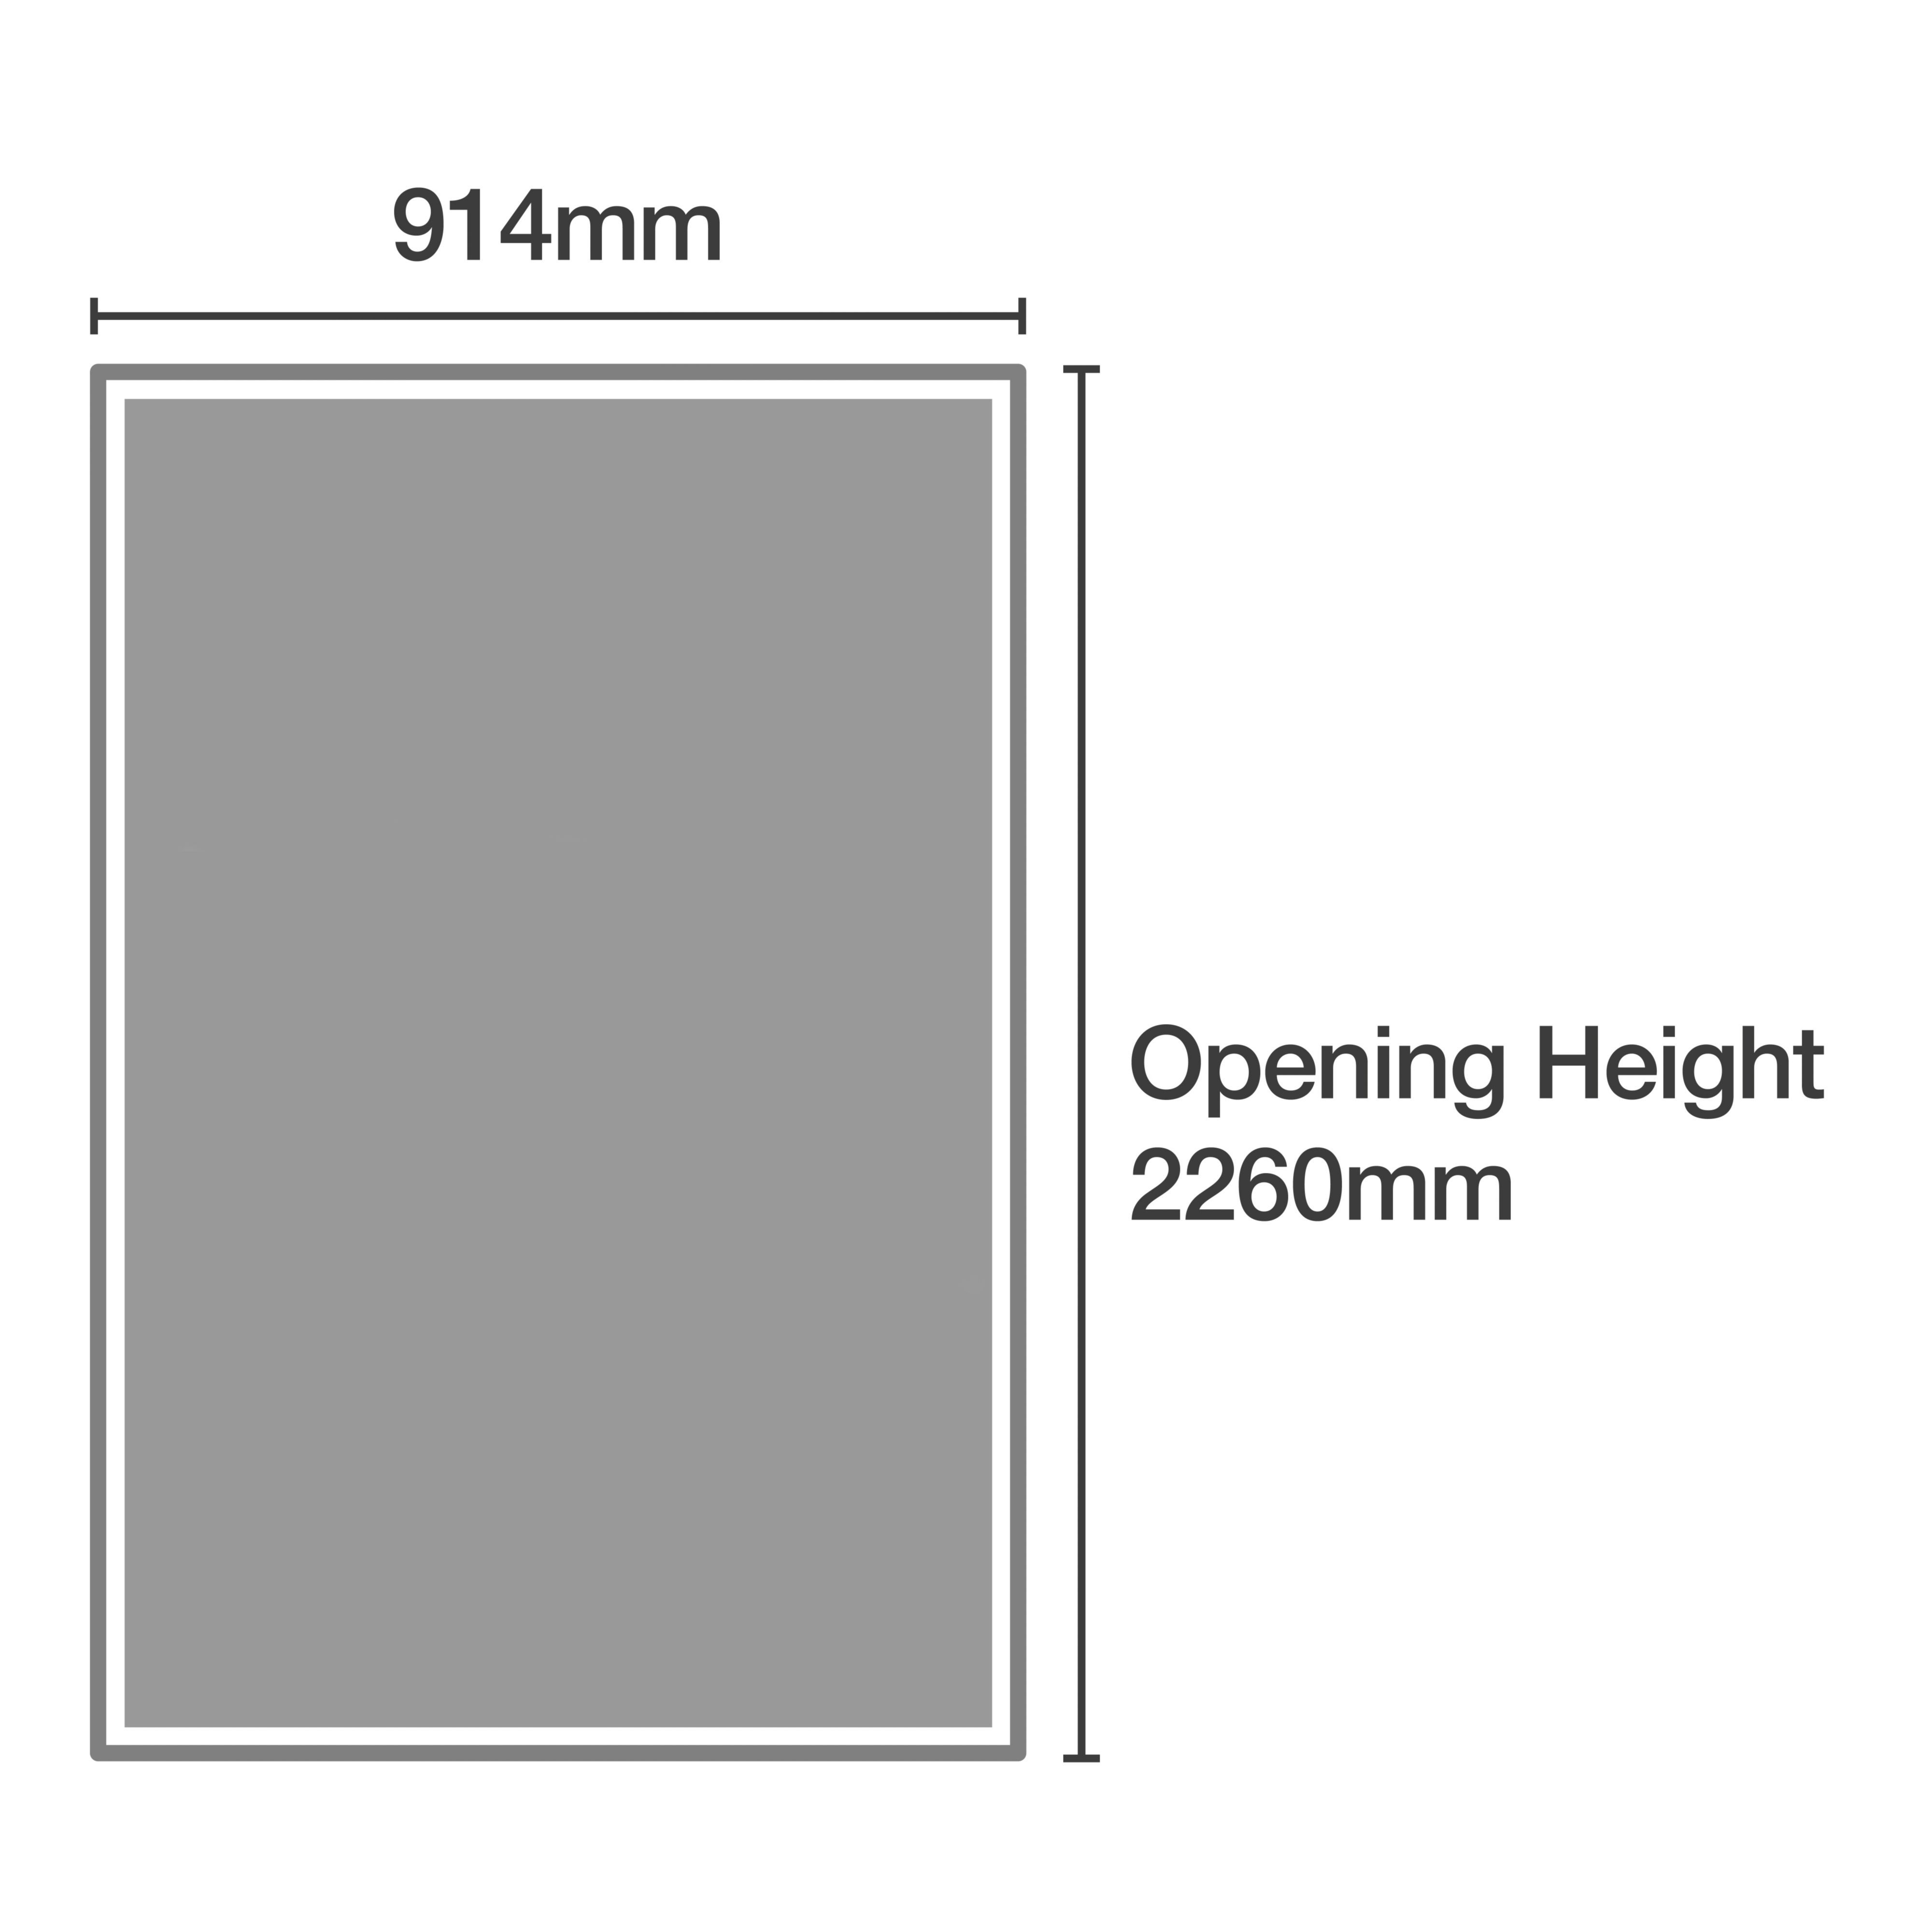 Panel Shaker Natural oak effect 2 door Sliding Wardrobe Door kit (H)2223mm (W)914mm